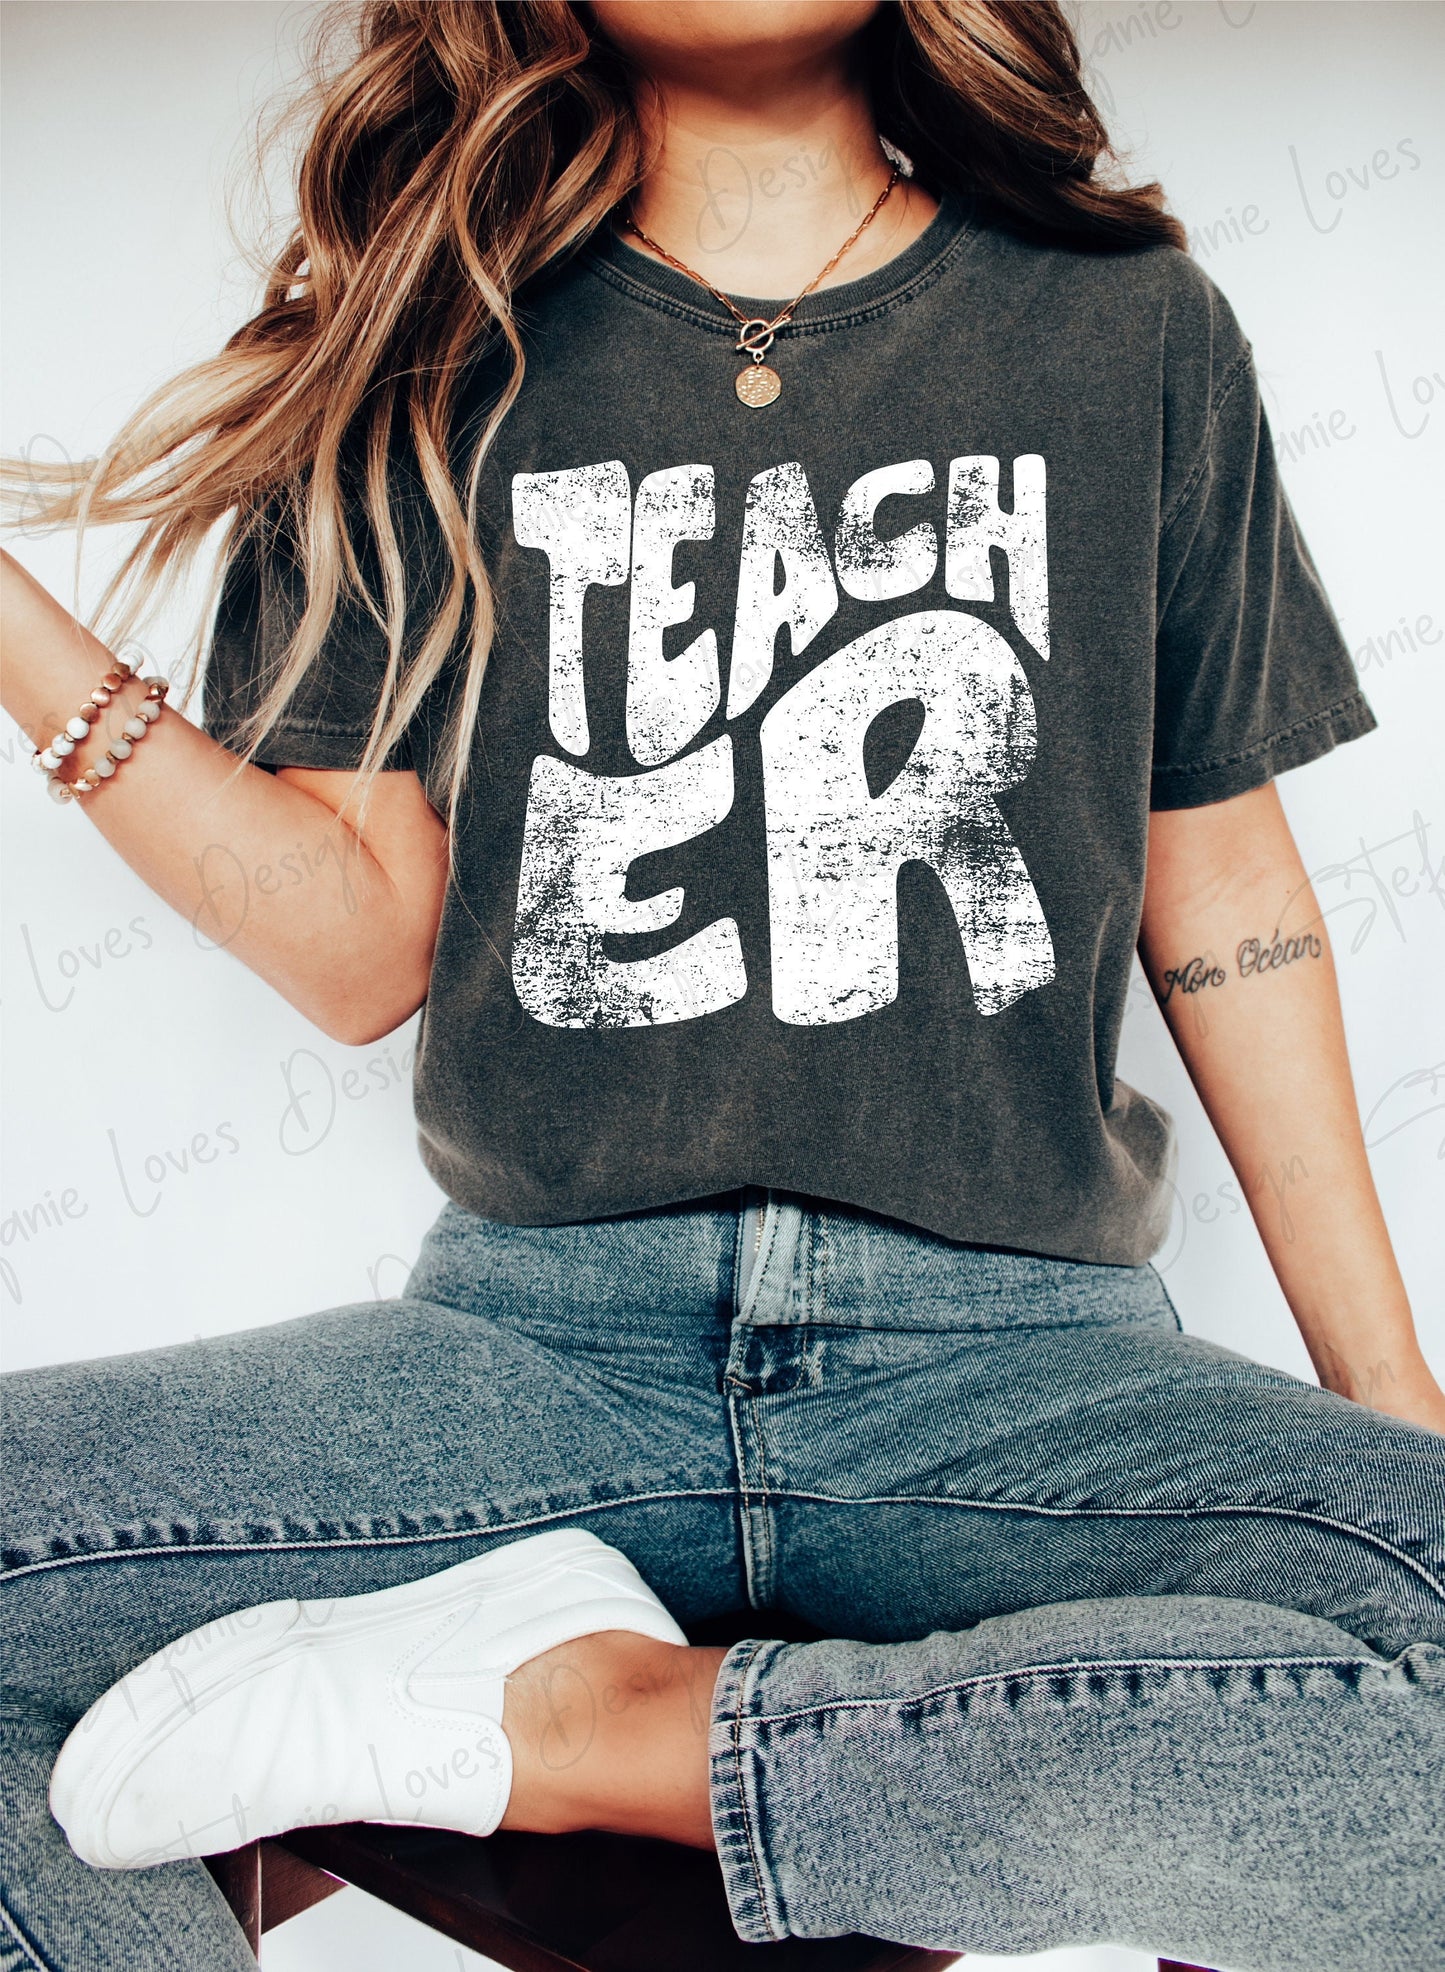 Teacher png, Teach, Distressed PNG, Teacher shirt, Gift for Teacher, Teacher Tee Design